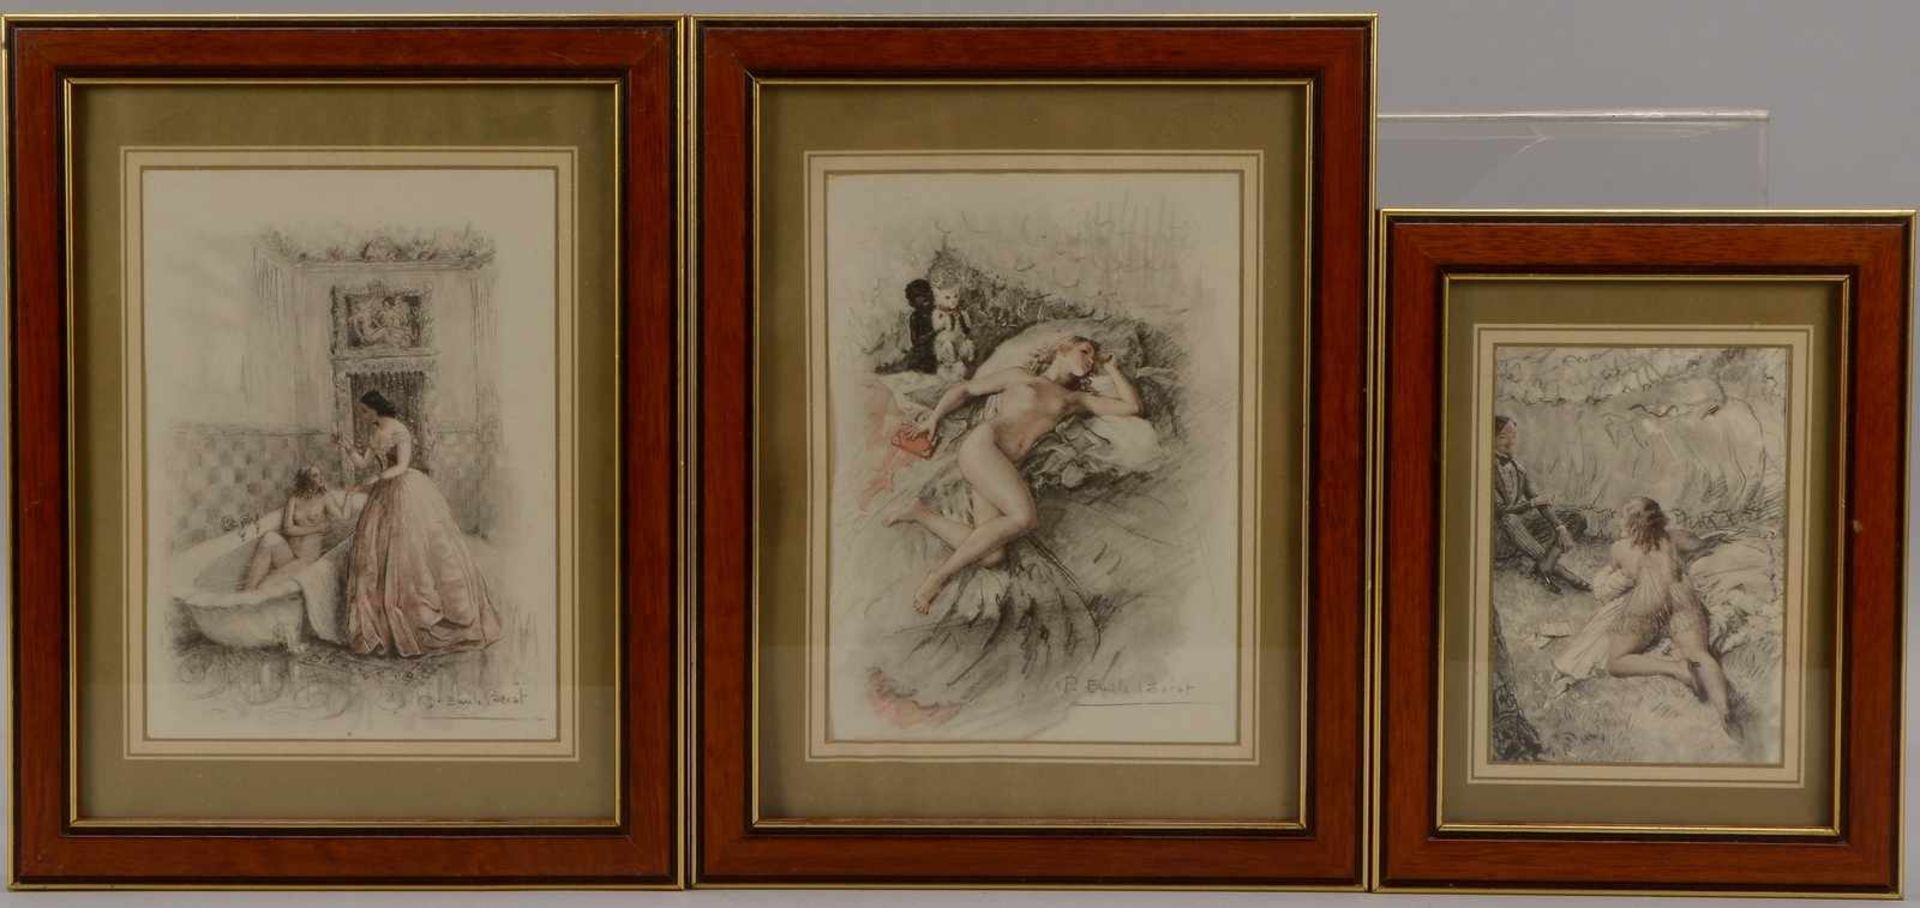 Bécan, Paul-Emile, 3 Drucke, 'Erotische Szenen', jeweils hinter Glas gerahmt; 1x Blattmaße 13 x 9